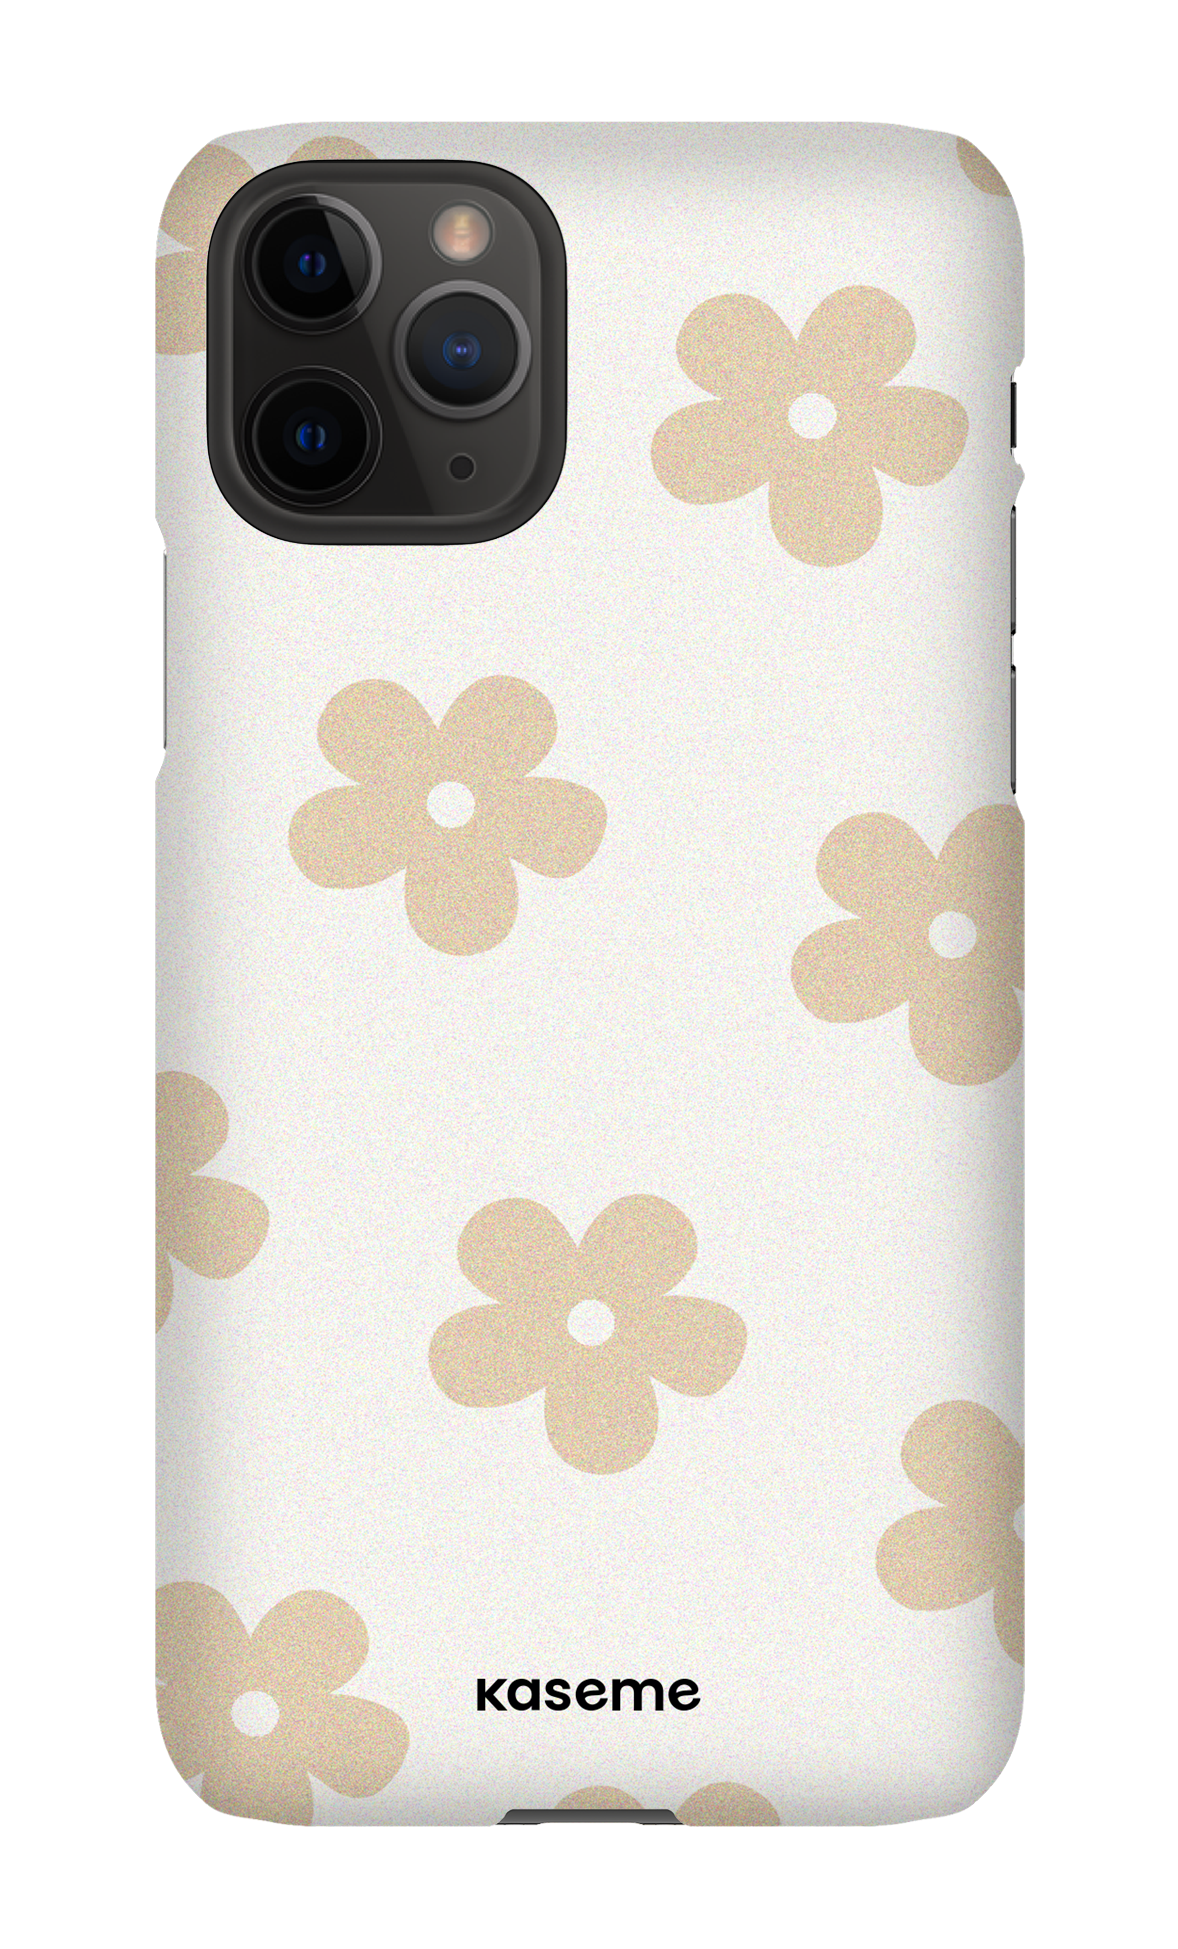 Woodstock beige - iPhone 11 Pro